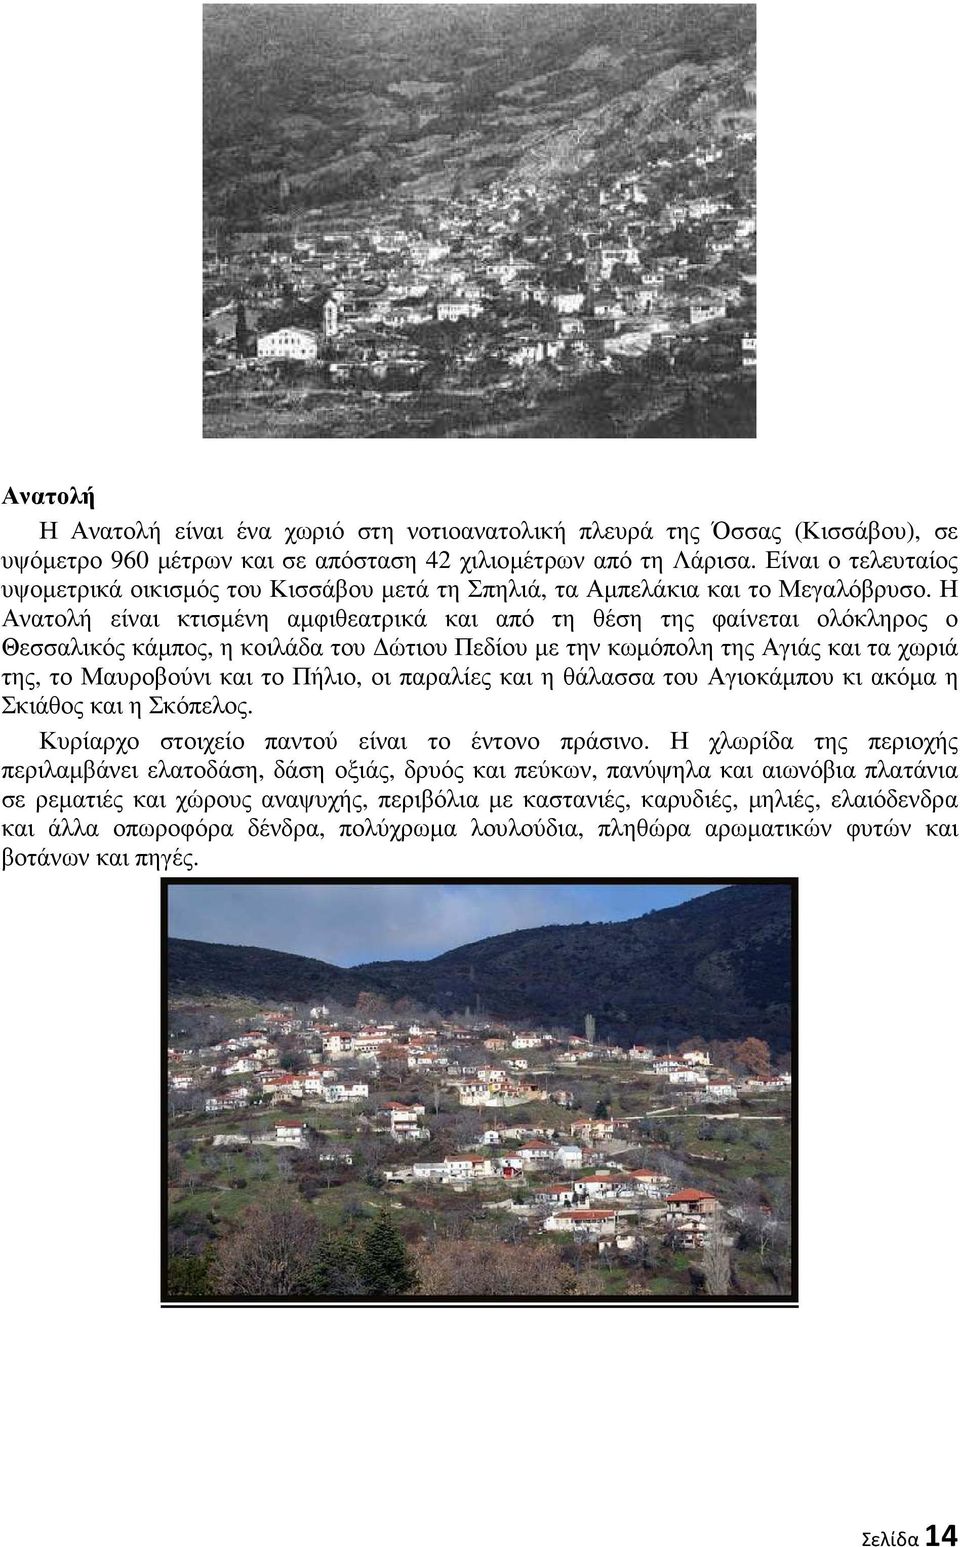 Η Ανατολή είναι κτισµένη αµφιθεατρικά και από τη θέση της φαίνεται ολόκληρος ο Θεσσαλικός κάµπος, η κοιλάδα του ώτιου Πεδίου µε την κωµόπολη της Αγιάς και τα χωριά της, το Μαυροβούνι και το Πήλιο, οι